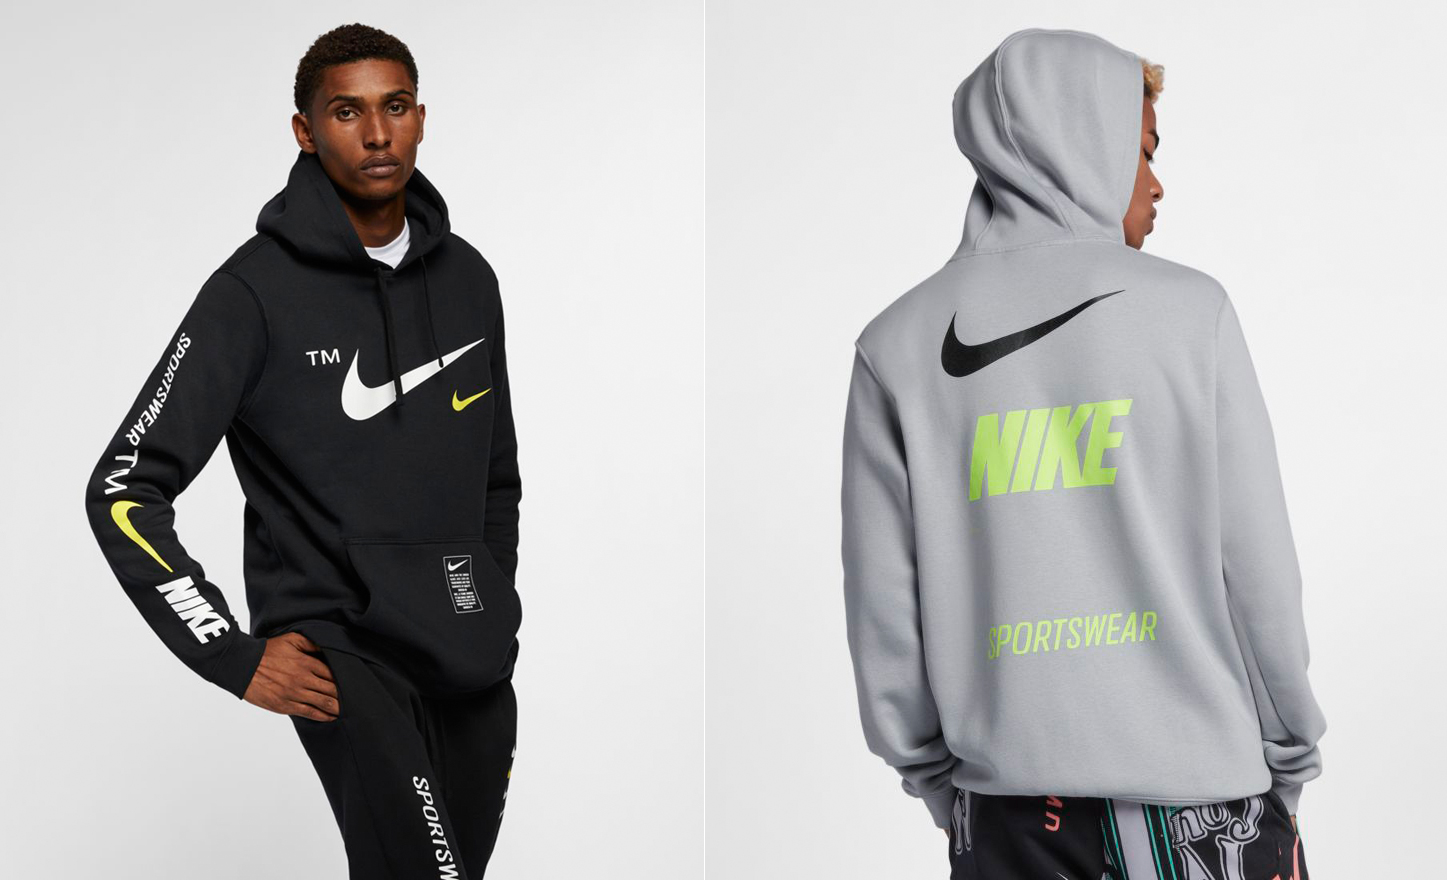 nike sportswear microbranding hoodie